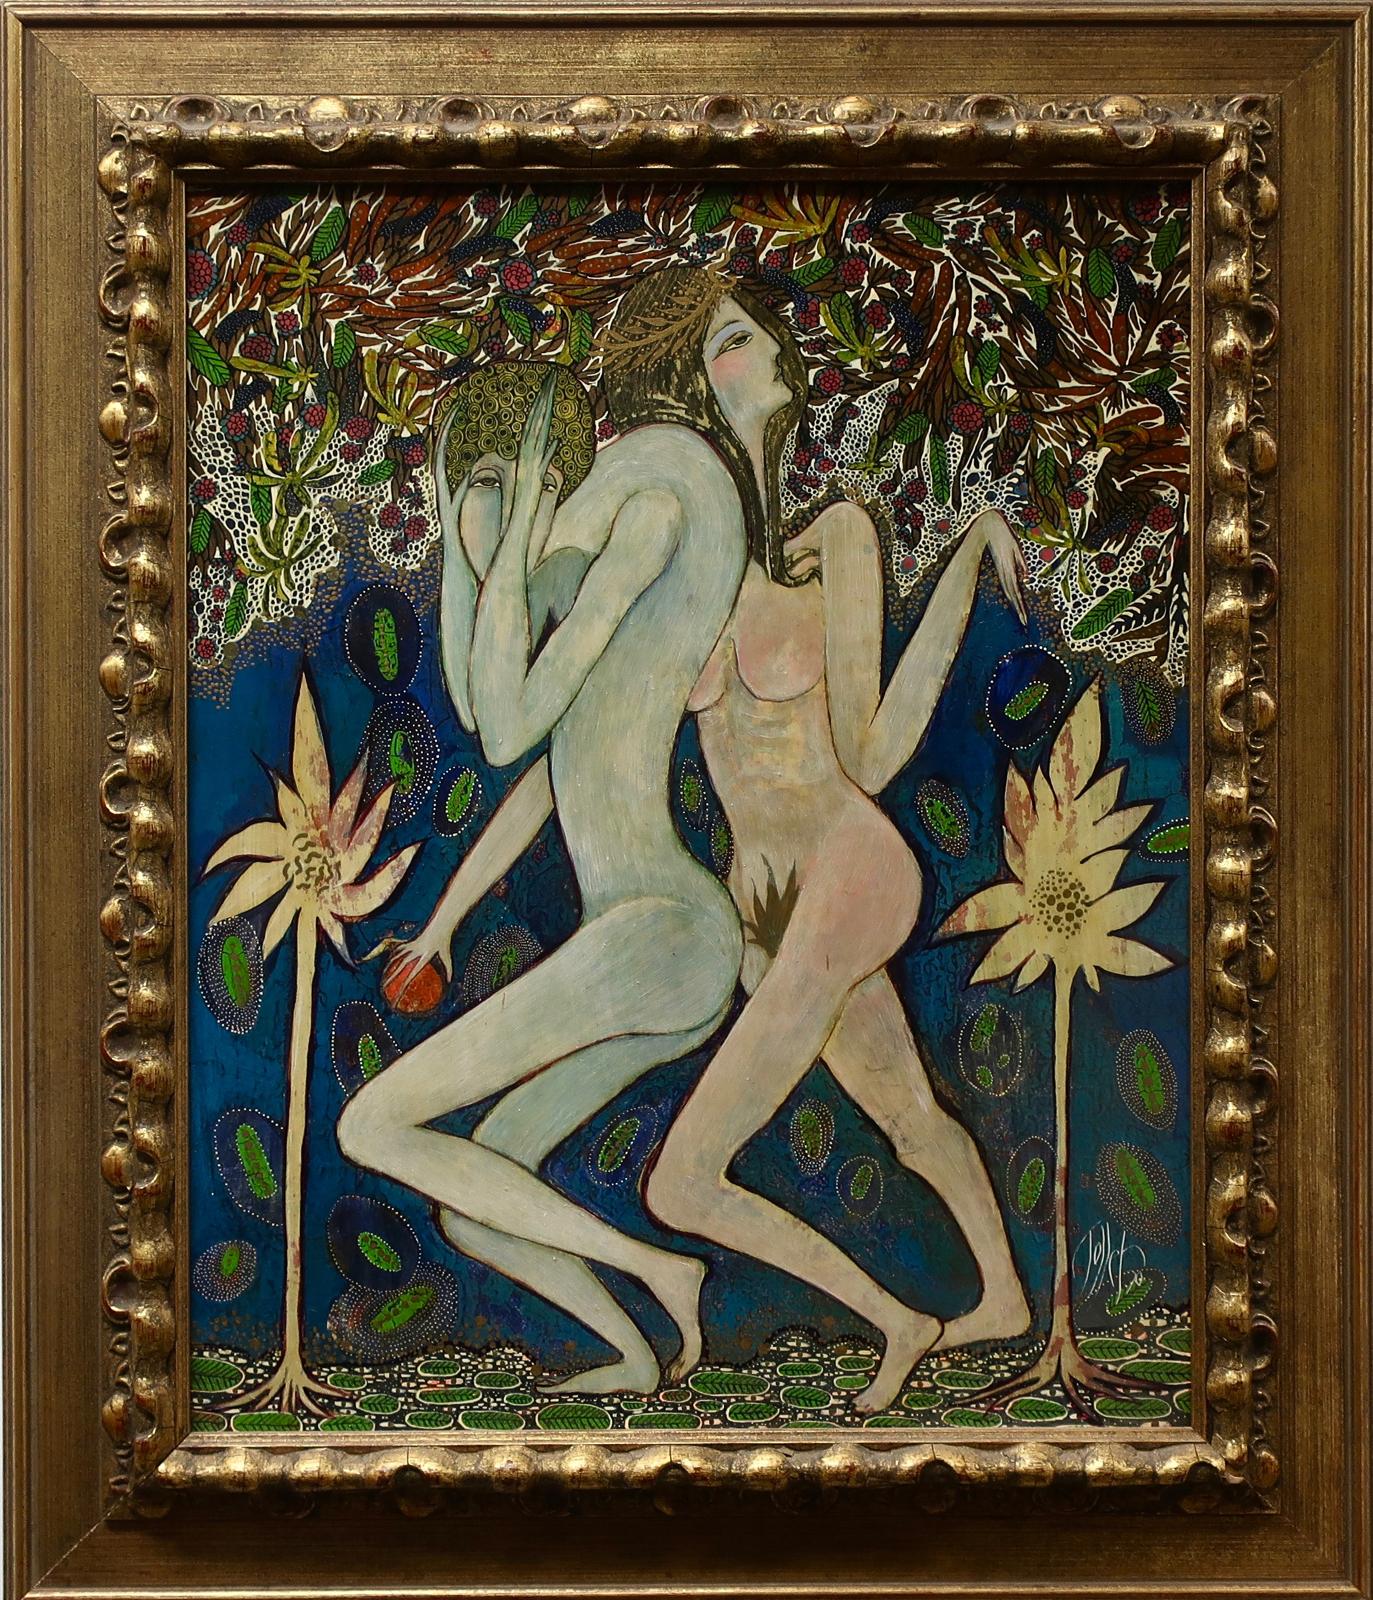 Toller Cranston (1949-2015) - Untitled (Adam & Eve)